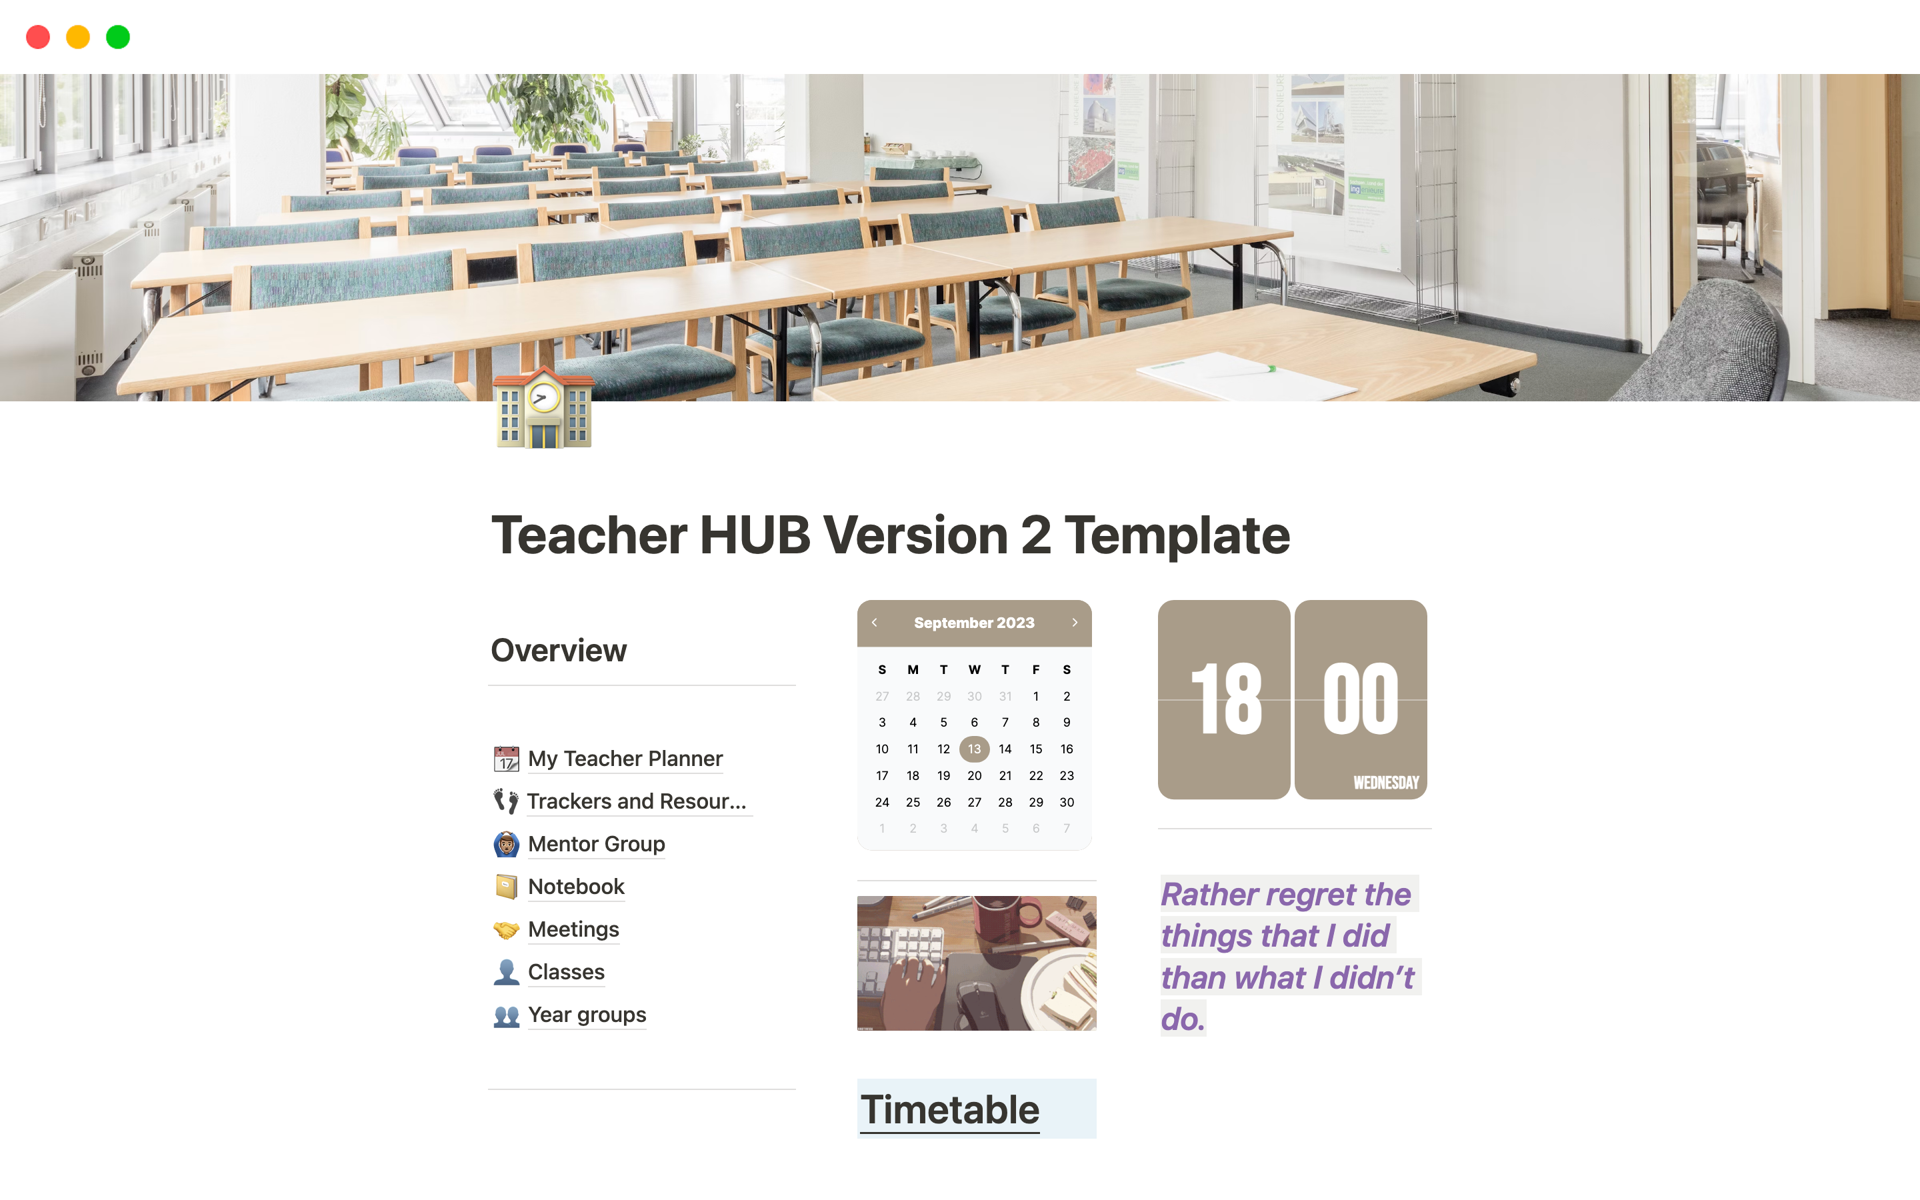 Uma prévia do modelo para Teacher HUB Version 2